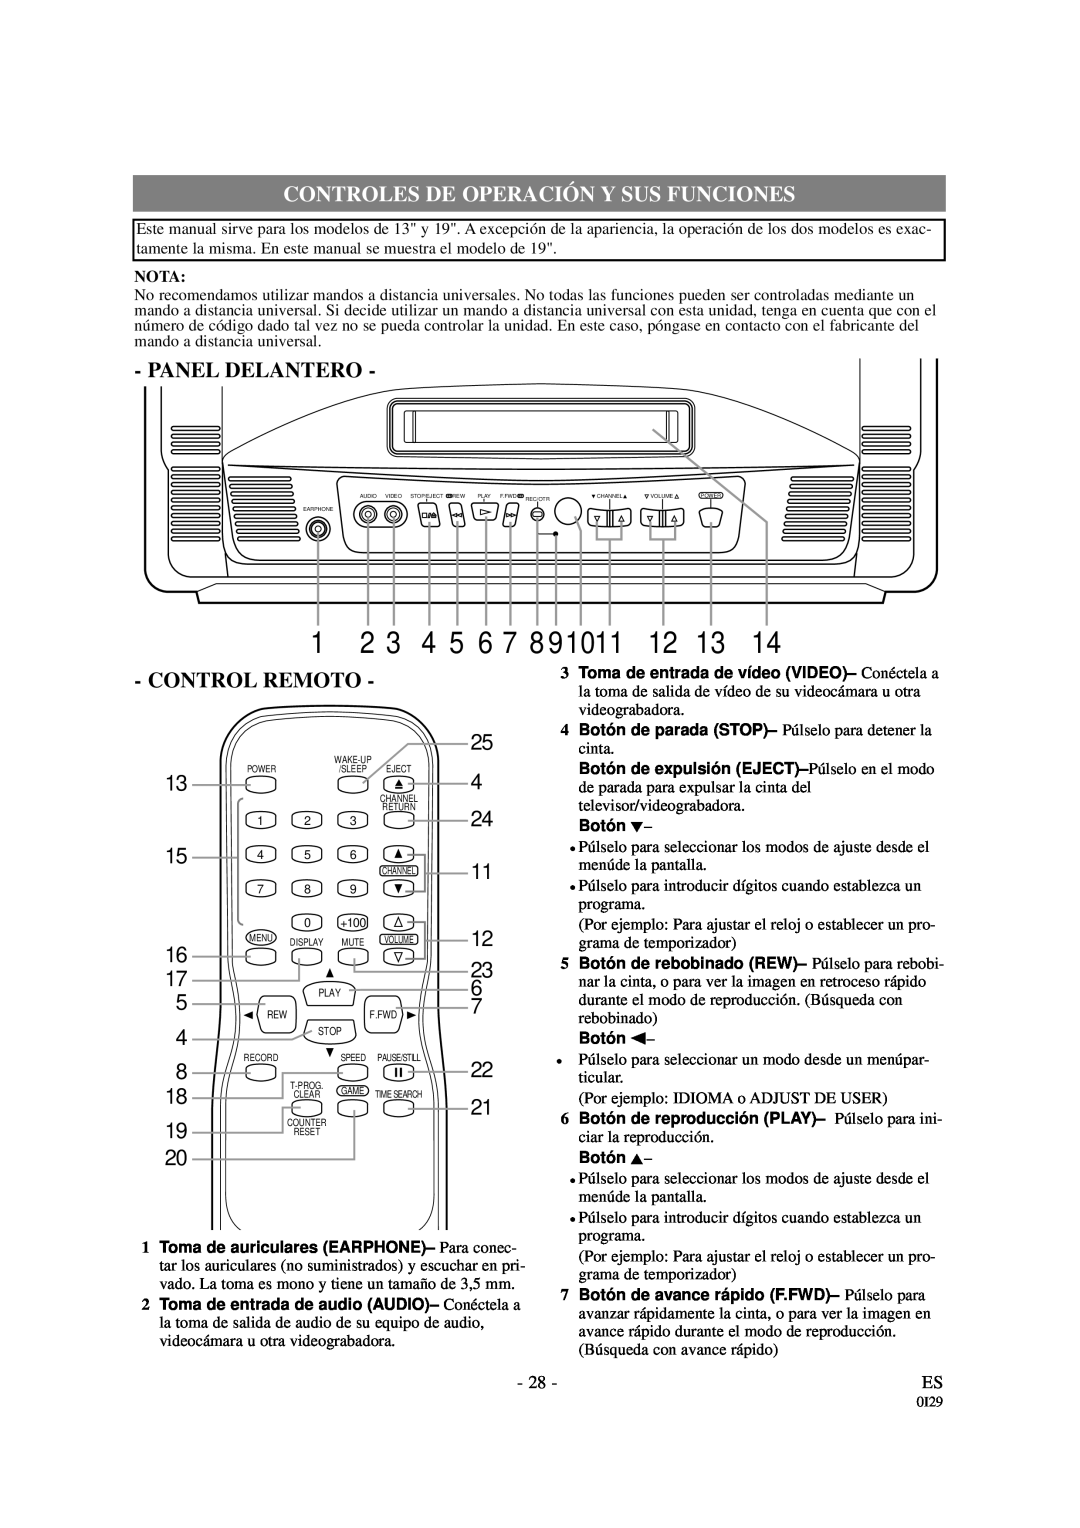 Emerson EWC1901 owner manual Controles De Operación Y Sus Funciones, Panel Delantero, Control Remoto, 4 5 6 7 8, Nota 